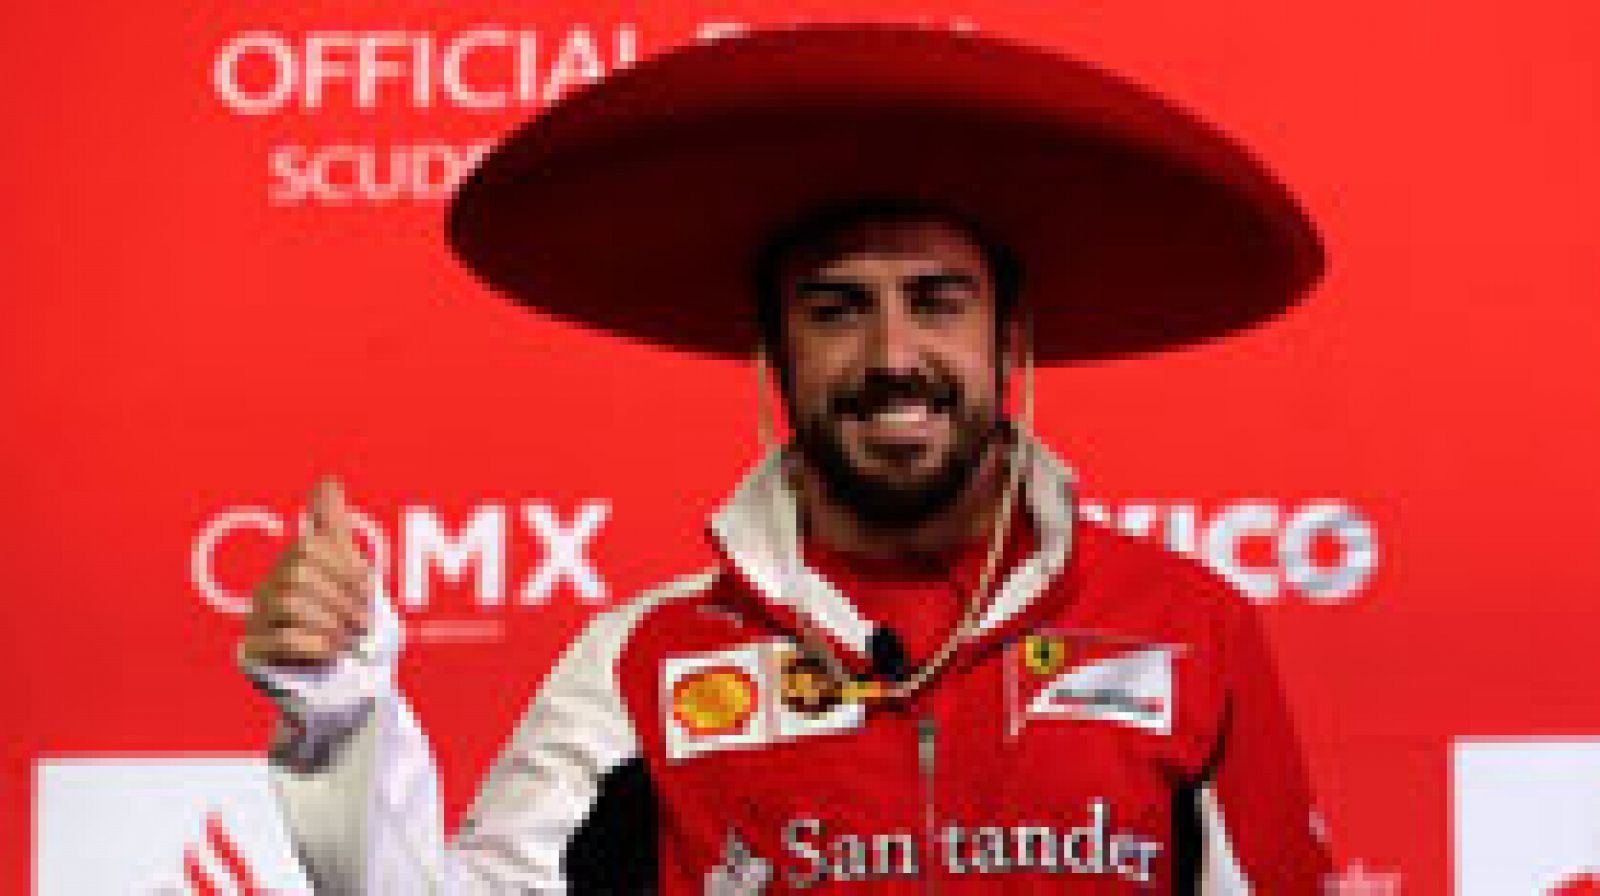 El español Fernando Alonso, piloto de Ferrari, ironizó sobre su futuro en la Fórmula Uno -categoría en la que es doble campeón del mundo (2005 y 2006, con Renault)- al decir que se entrenará bien para la próxima temporada para cambiar de equipo en cada carrera.

"No tengo nada decidido para el año que viene, sí que lo tengo pensado en mi cabeza, pero todavía no hay nada definitivo", dijo Alonso en conferencia de prensa, durante su visita al autódromo Hermanos Rodríguez de la Ciudad de México.